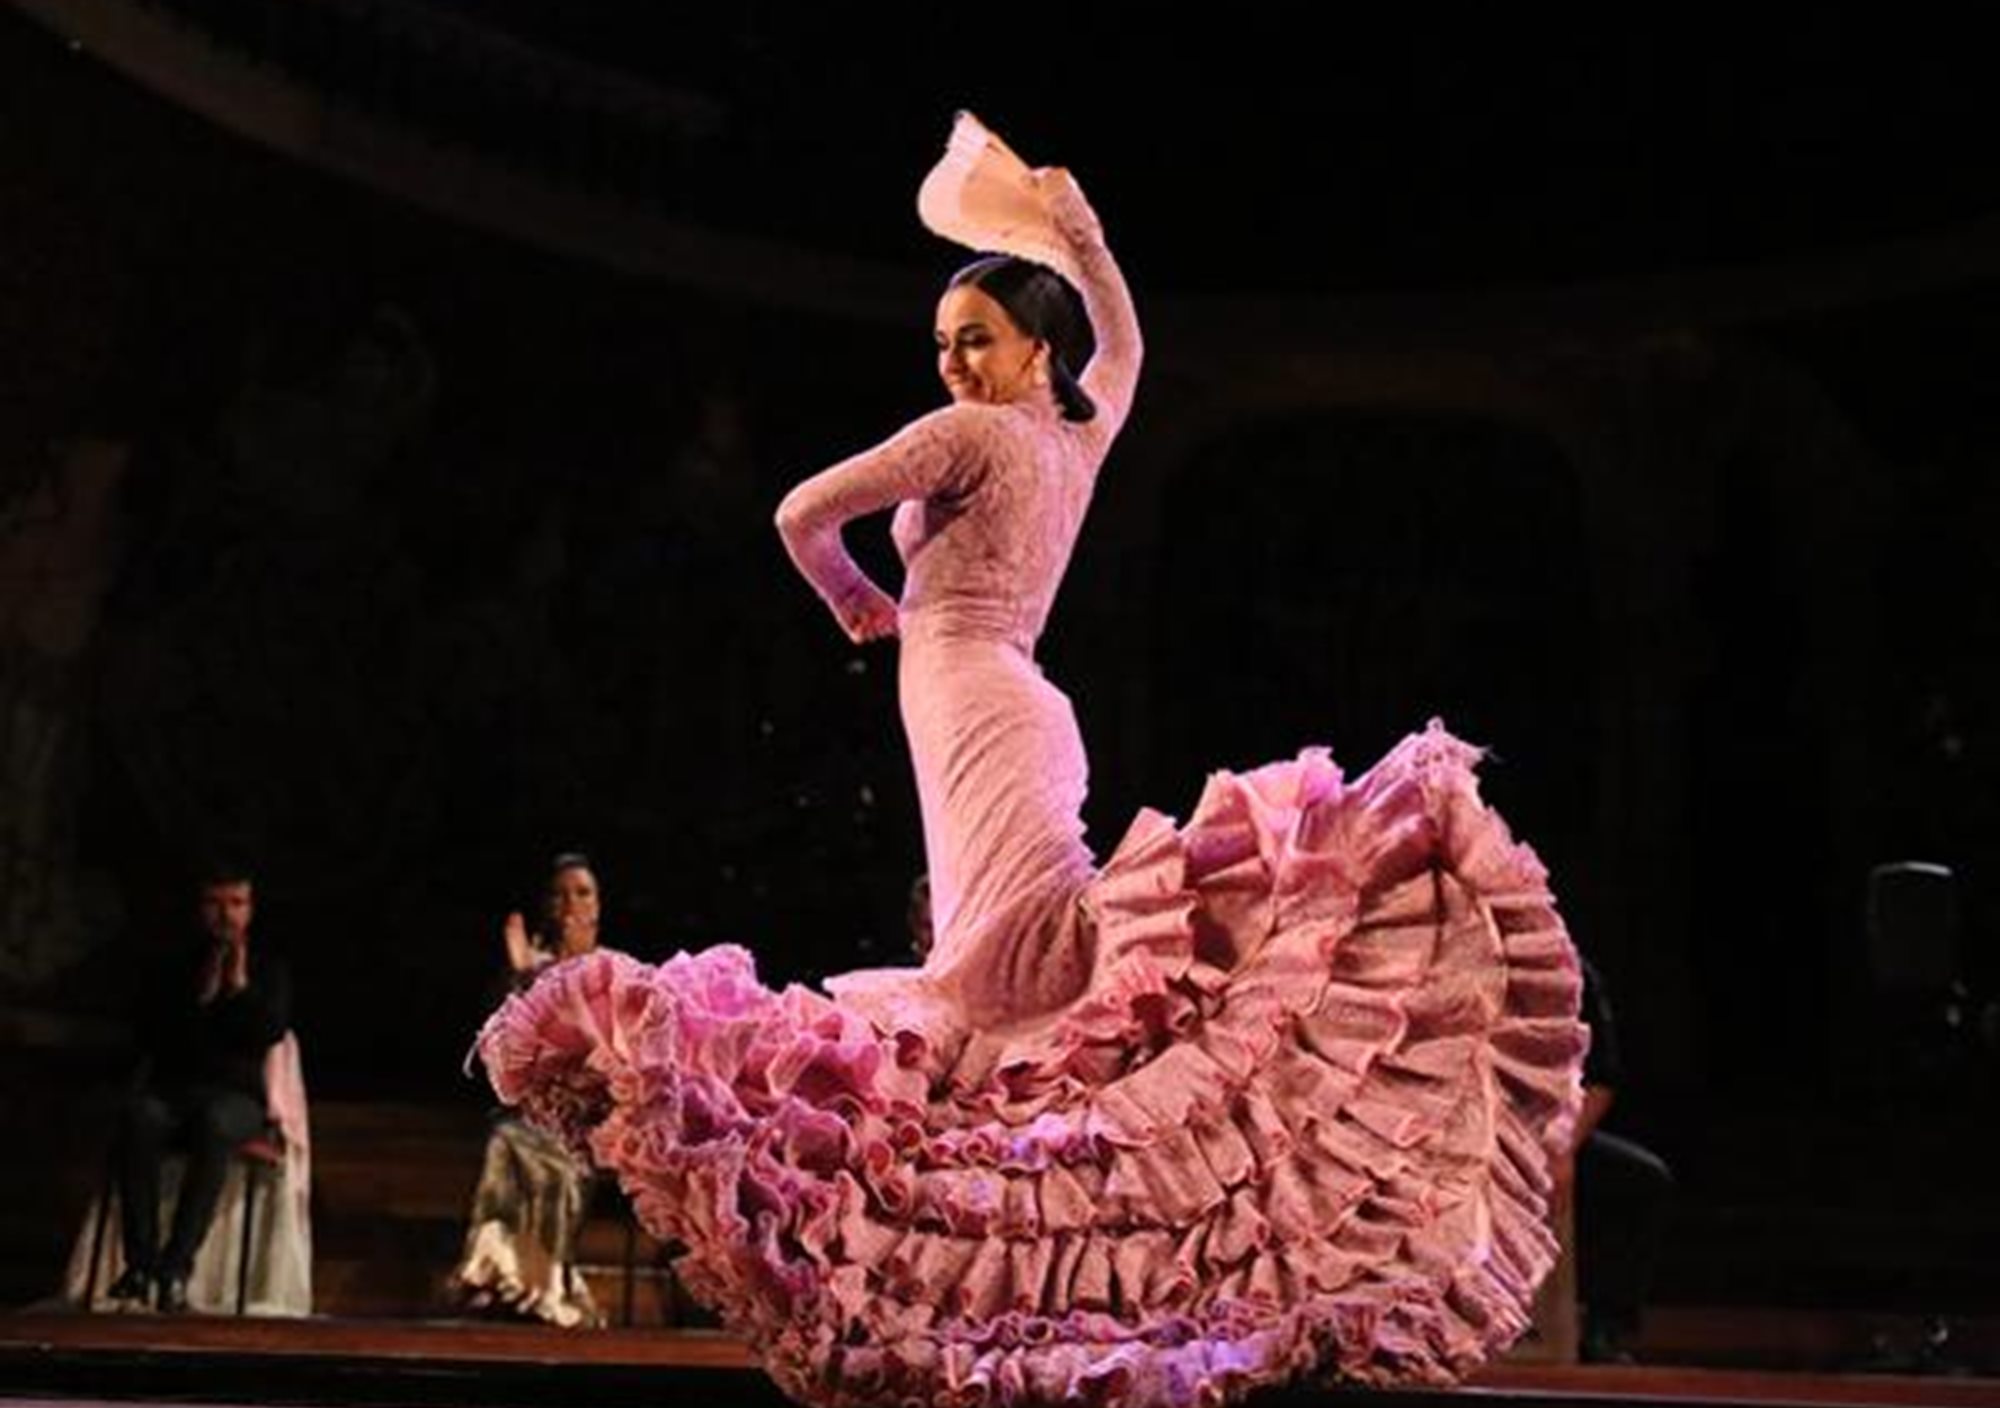 acheter réservations réserver visites guidées tours billets visiter Spectacle Gran Gala Flamenco au Palau de la Musica